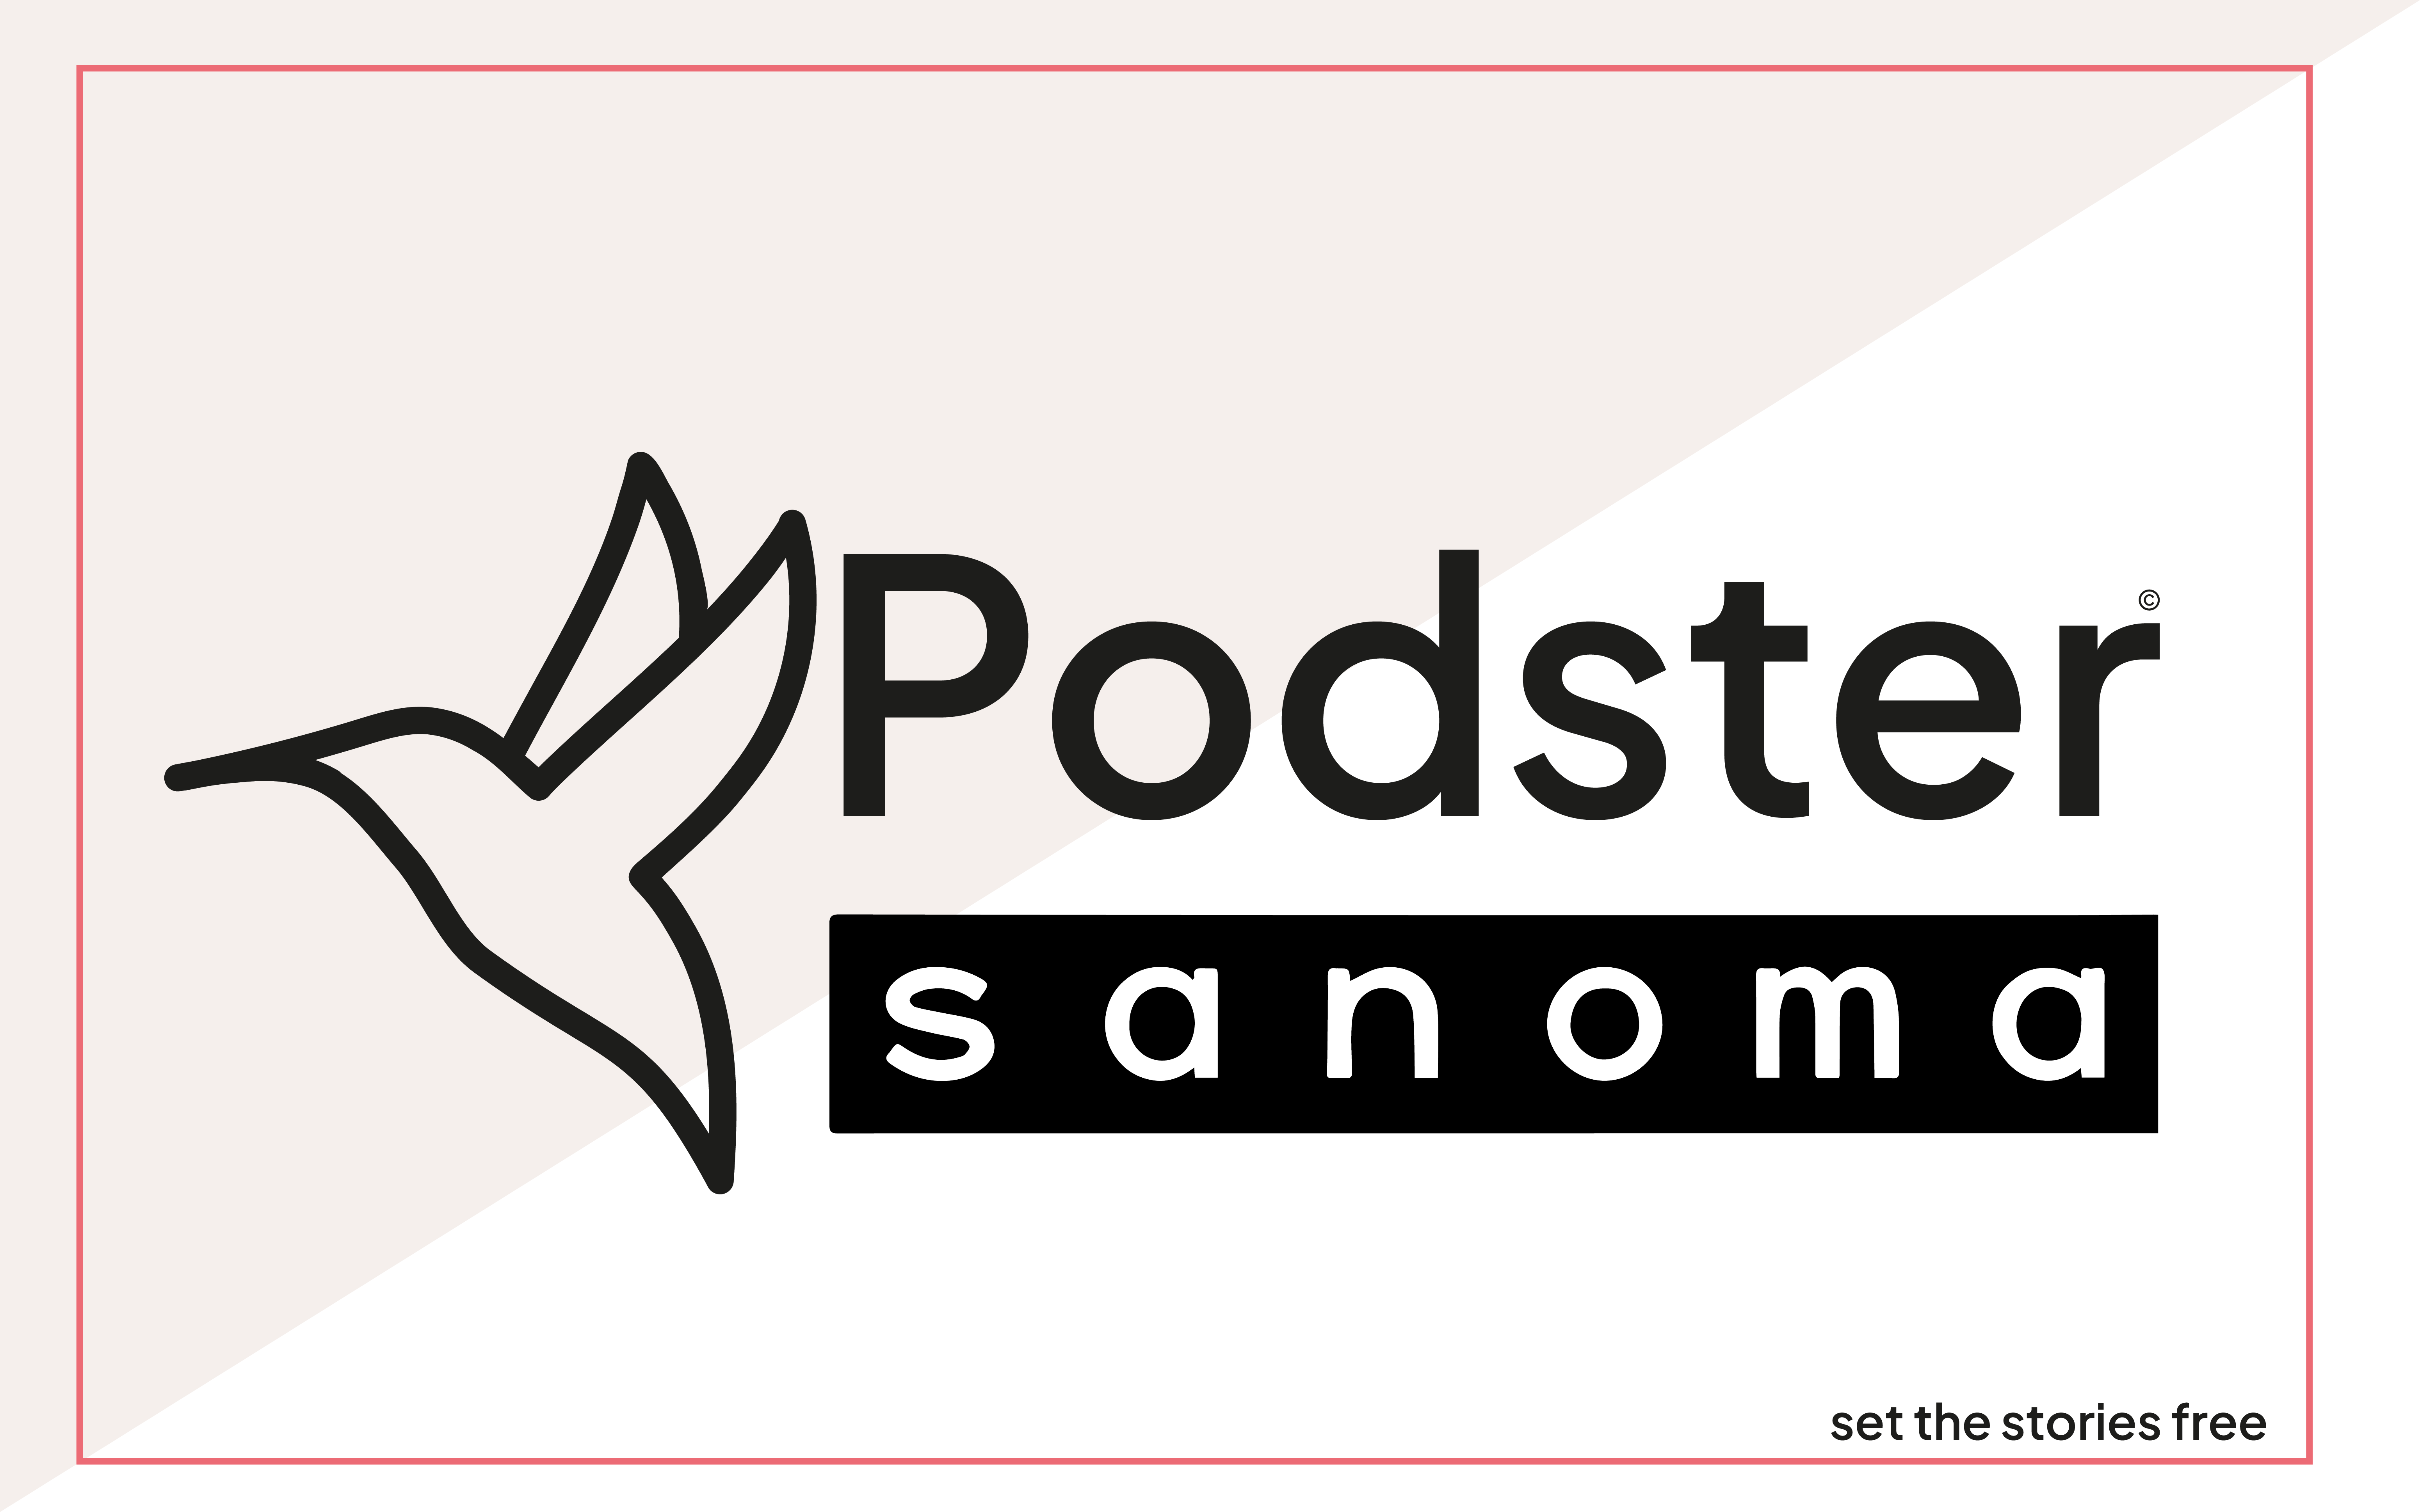 Podster & Sanoma